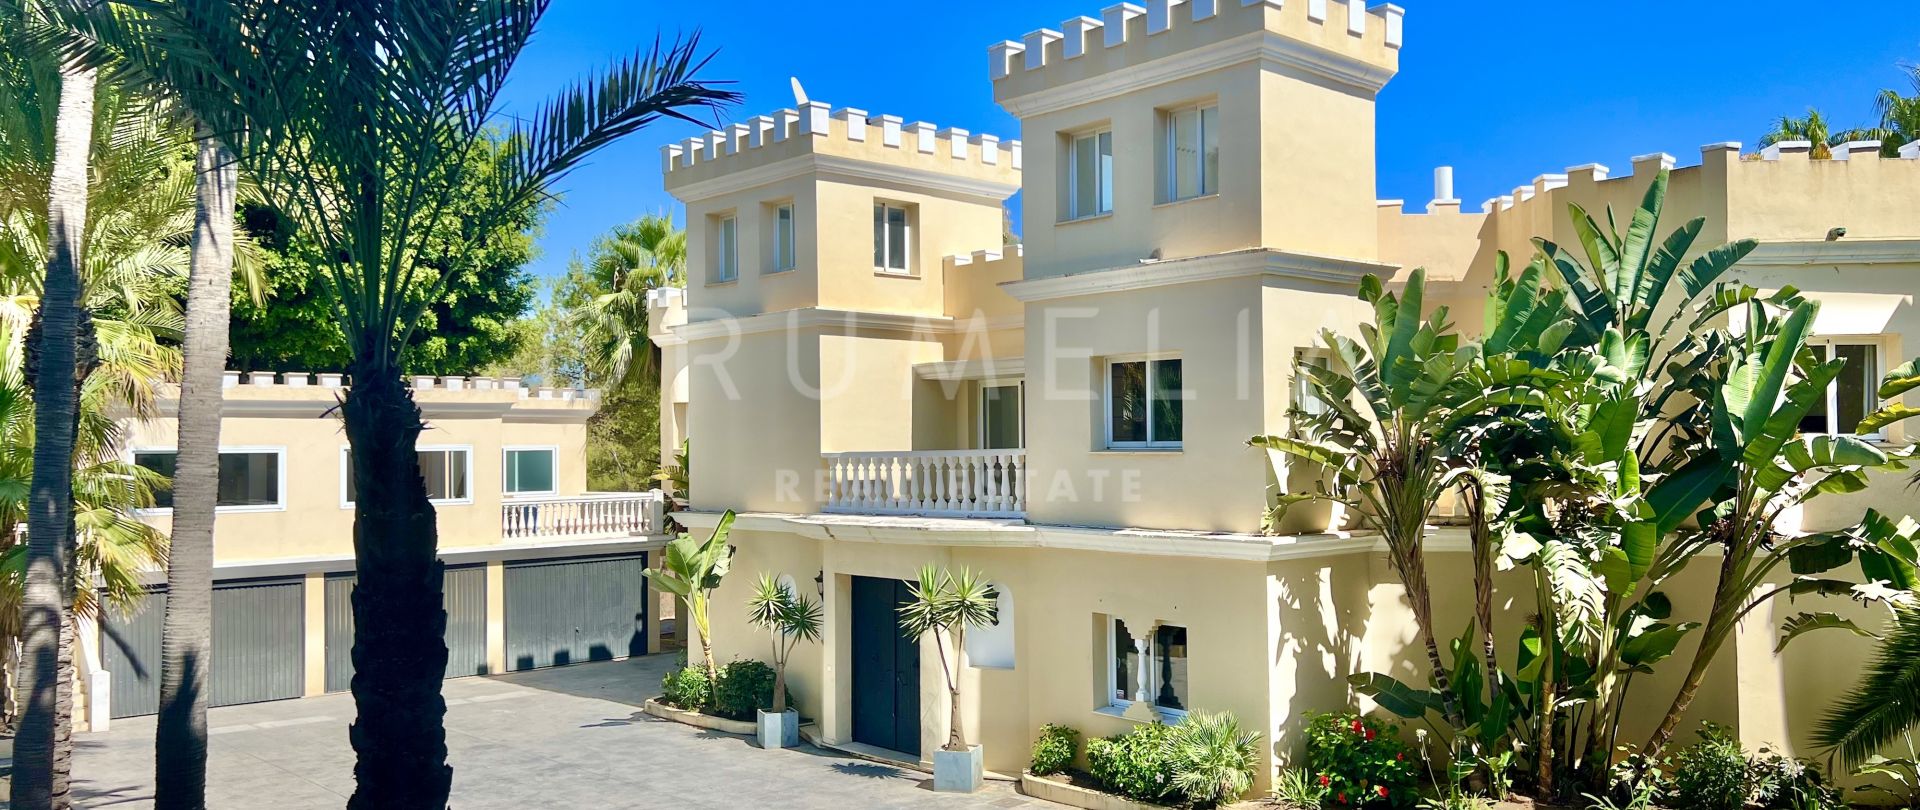 Villa for salg i Marbella Golden Mile, Marbella (Alle)